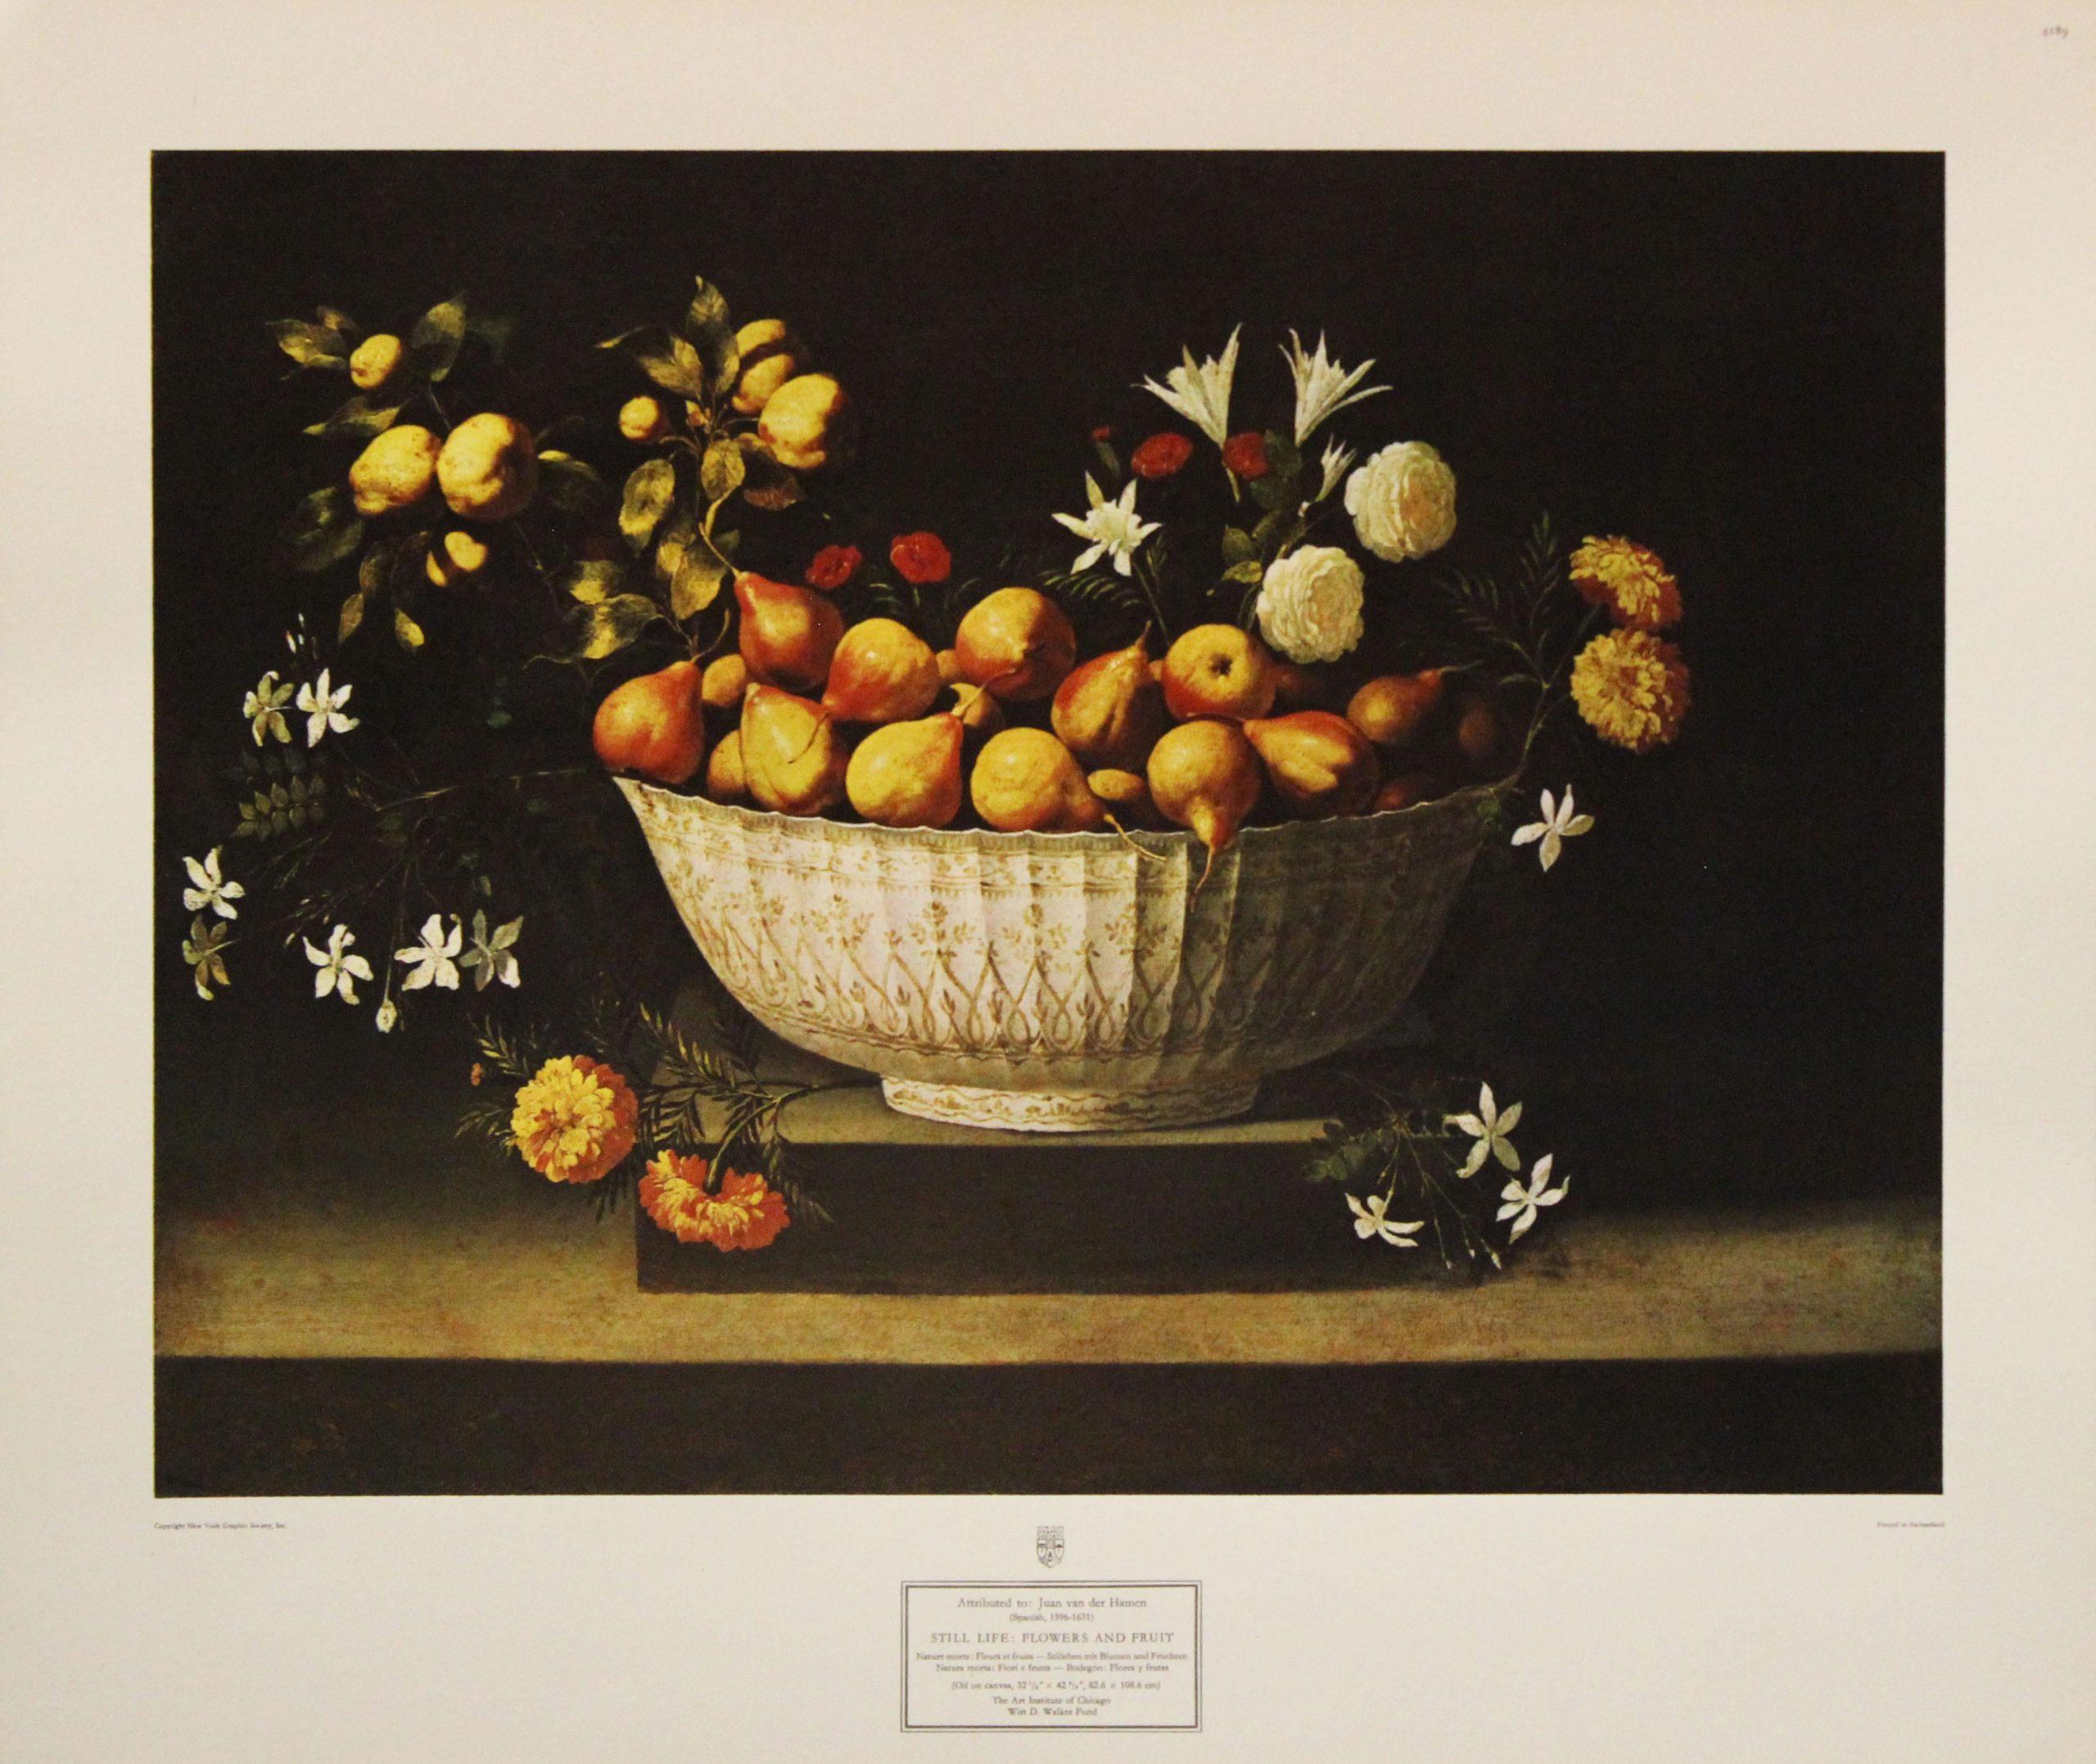 Juan van der Hamen Still-Life Print - “Still Life: Flowers and Fruit” Poster. Copyright New York Society, Inc. 